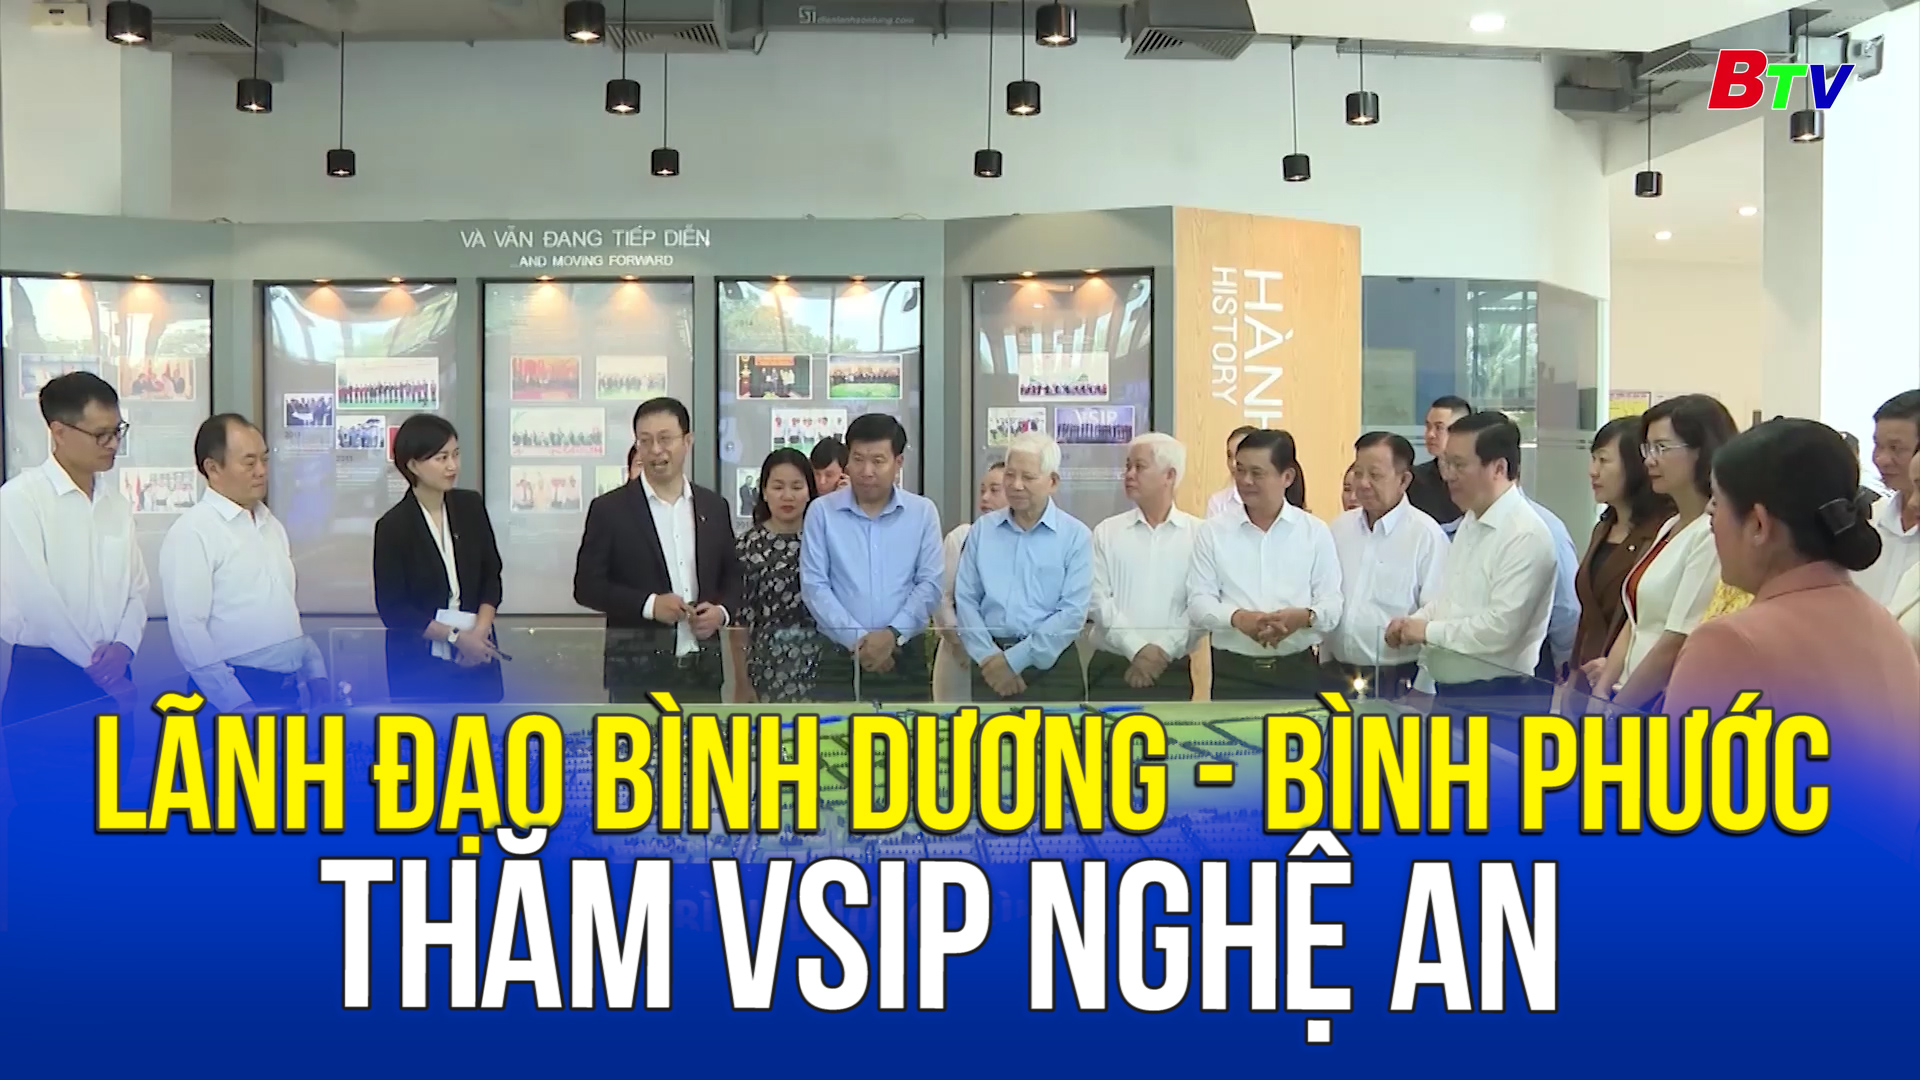 Lãnh đạo Bình Dương - Bình Phước thăm VSIP Nghệ An